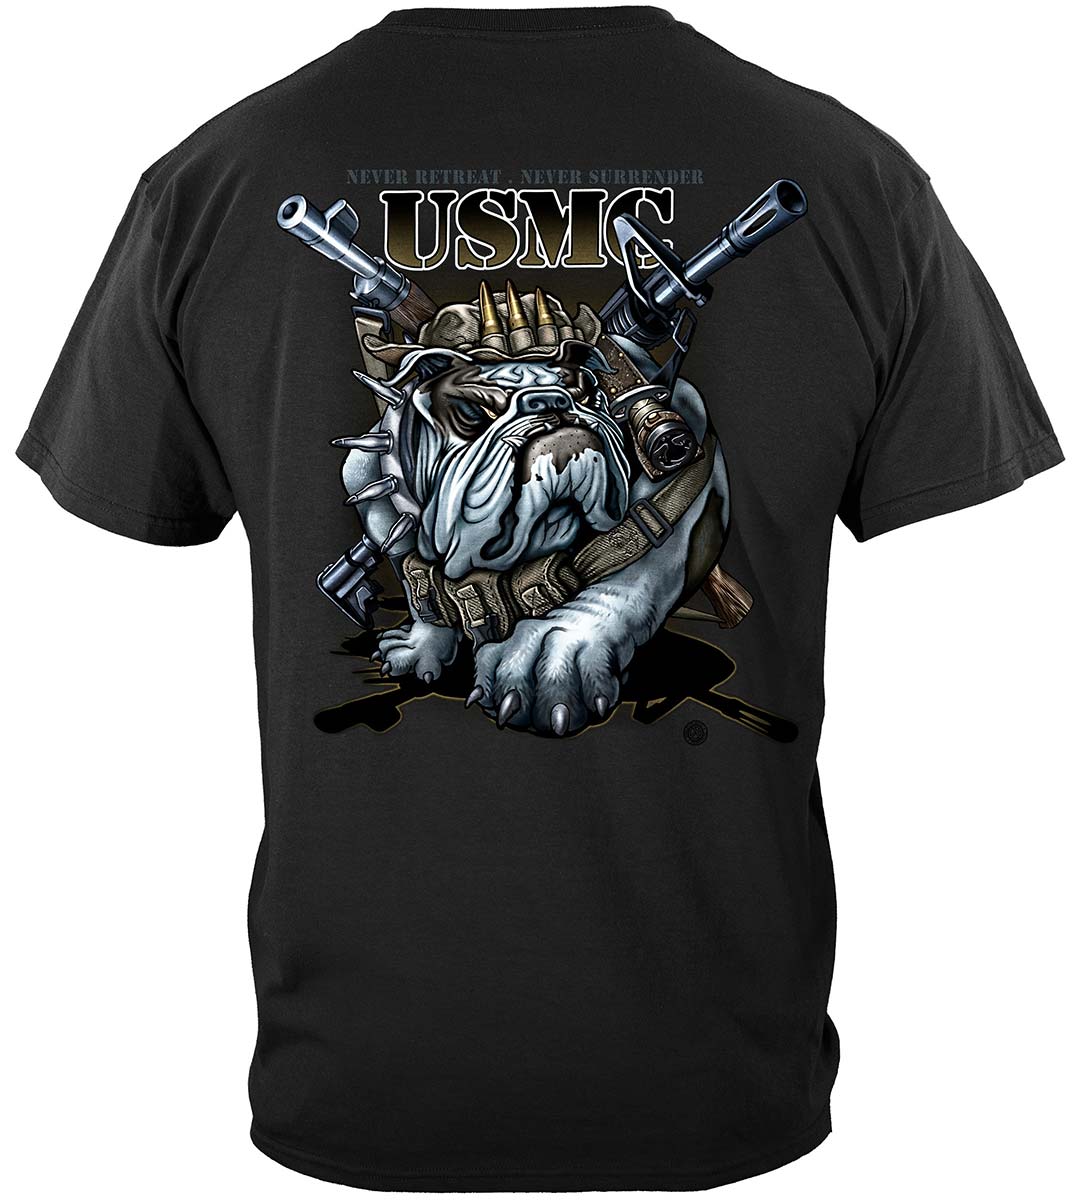 Never Retreat Never Surrender Marine Corps Premium T-Shirt